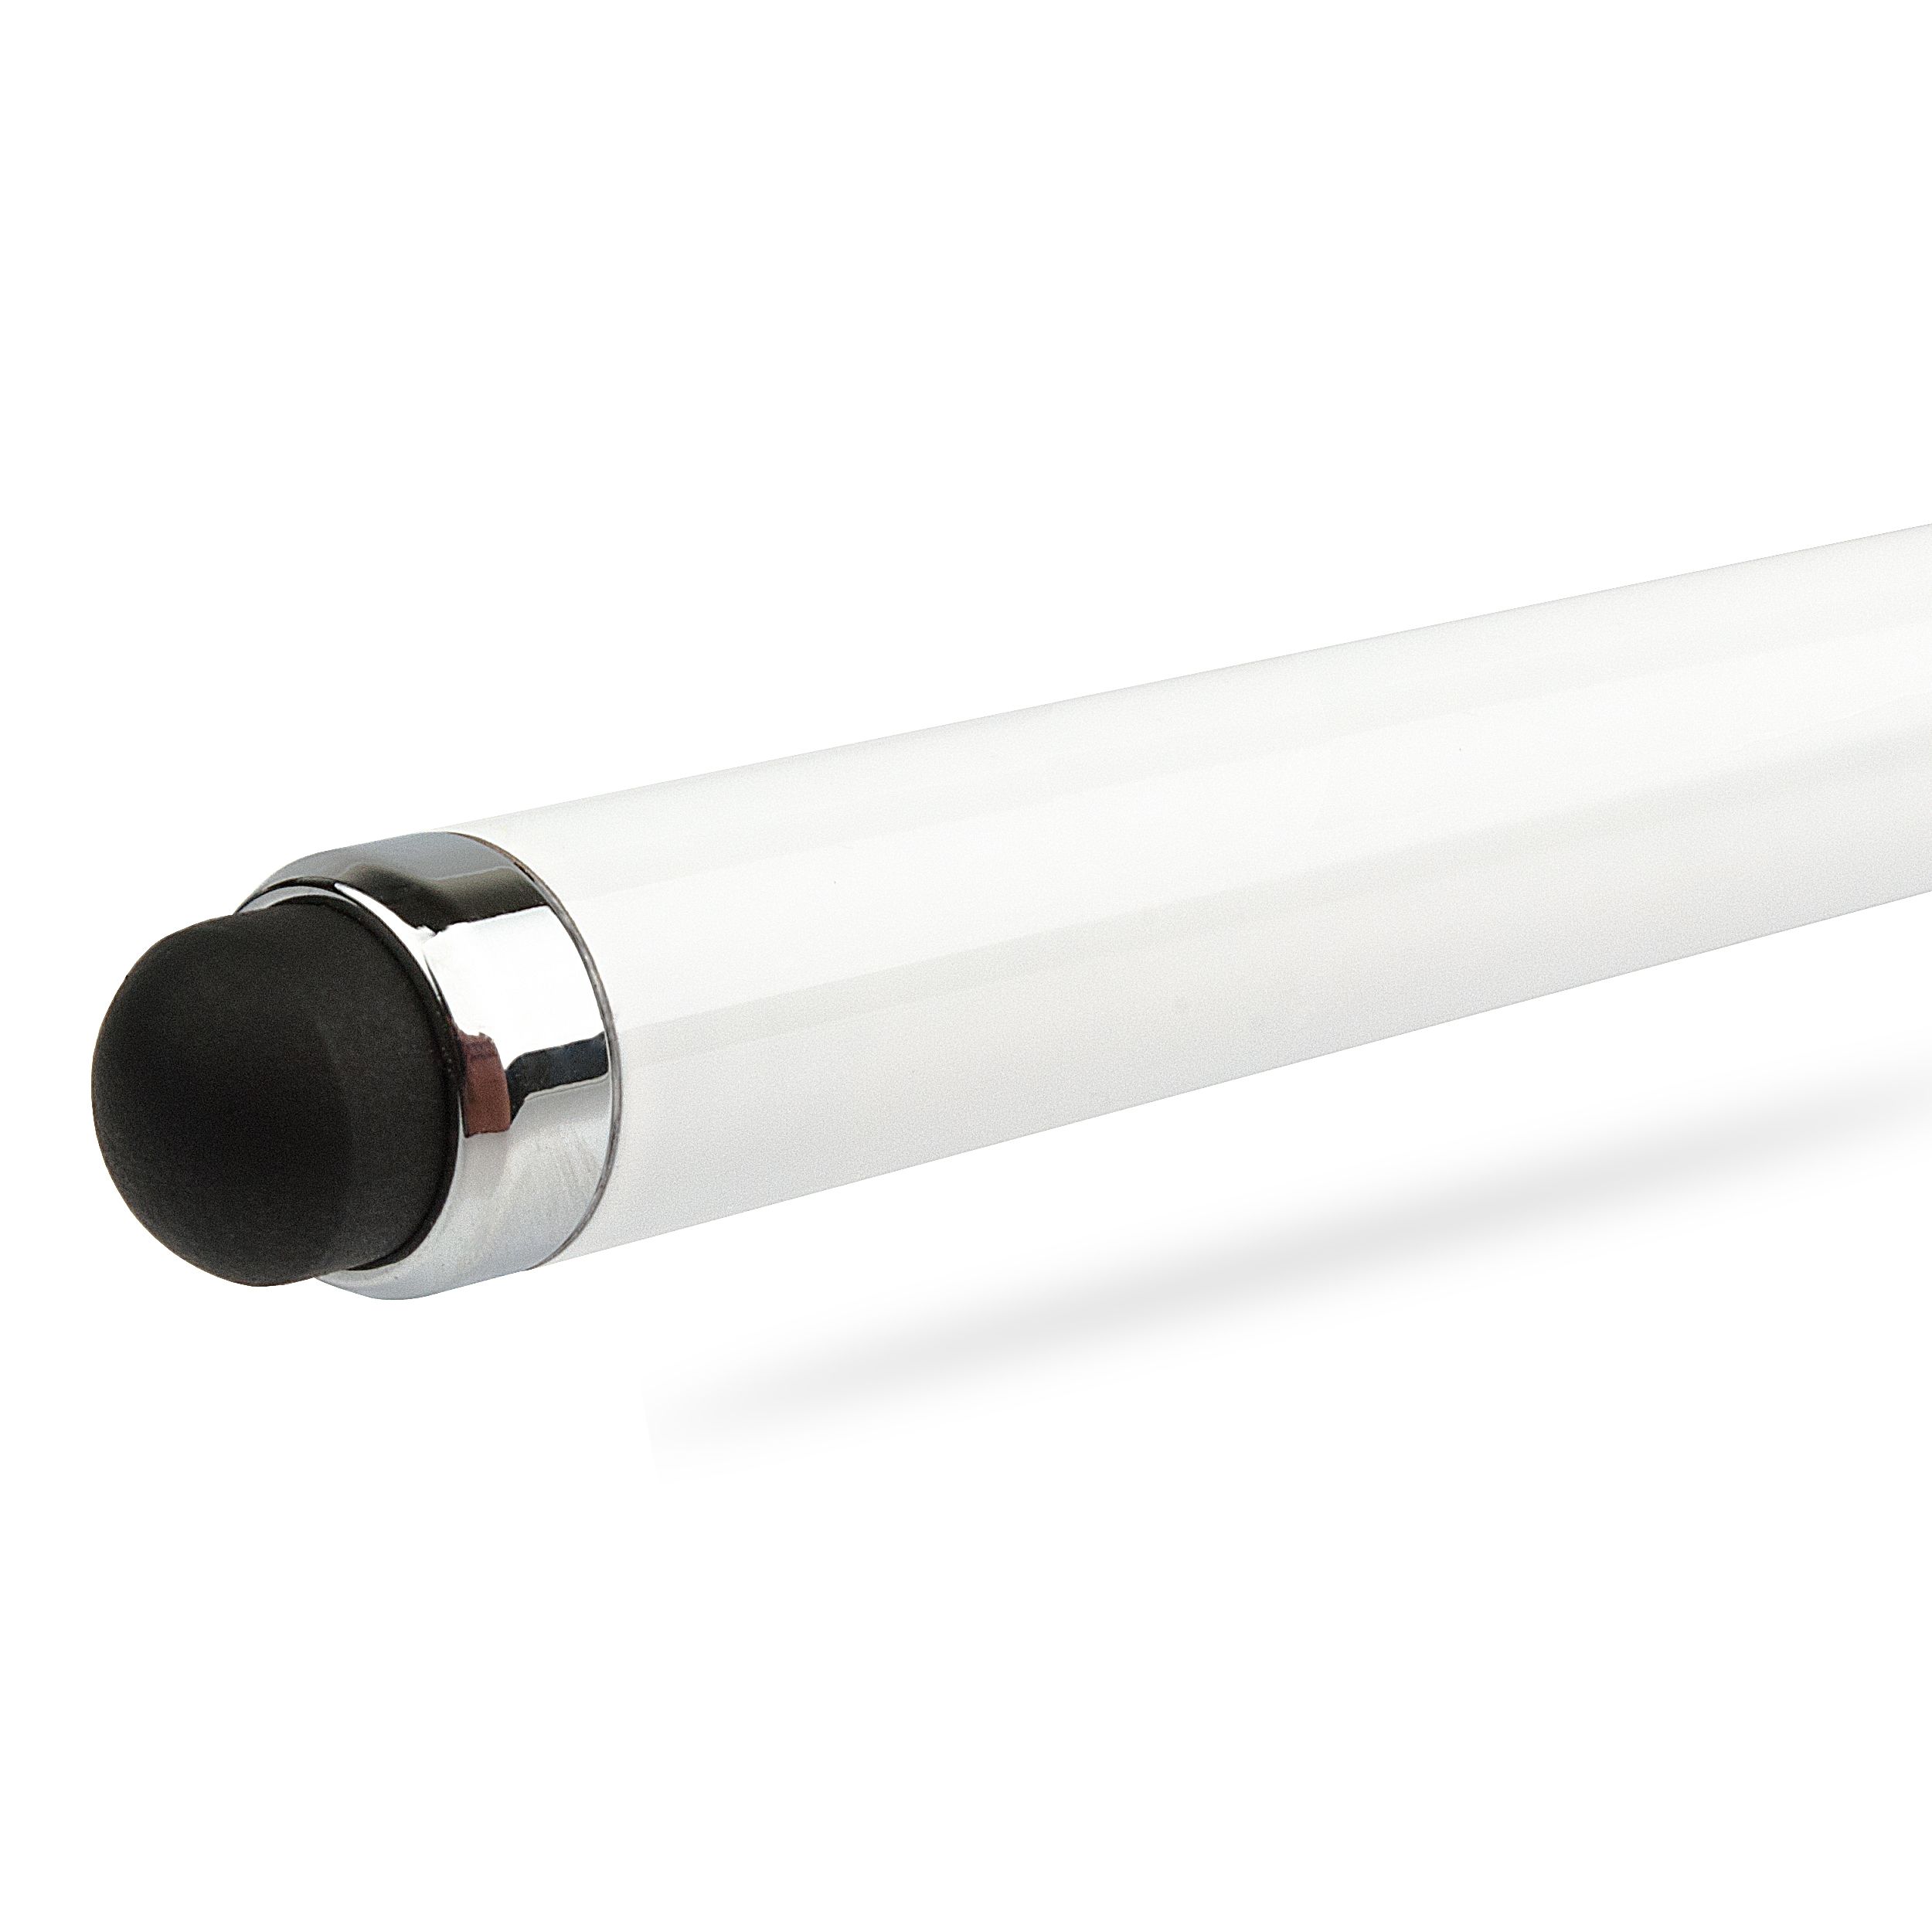 Custom 4-in-1 LED Laser Pointer & Metal Ballpoint Pen w/ Stylus